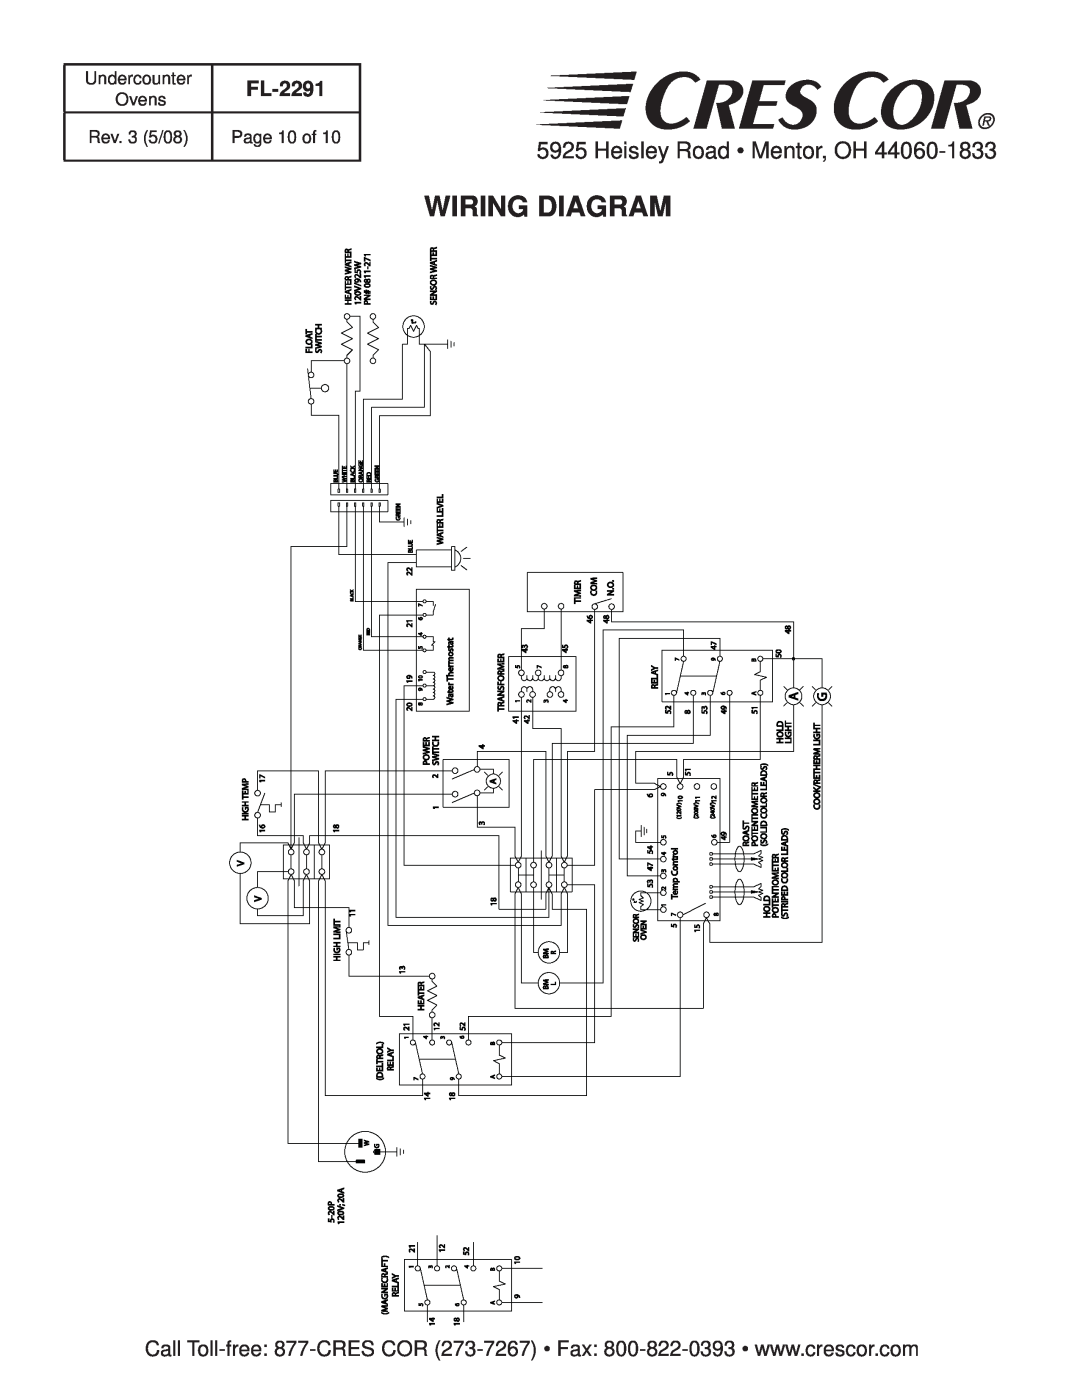 Cres Cor FL-2291 manual Wiring Diagram, Heisley Road Mentor, OH 